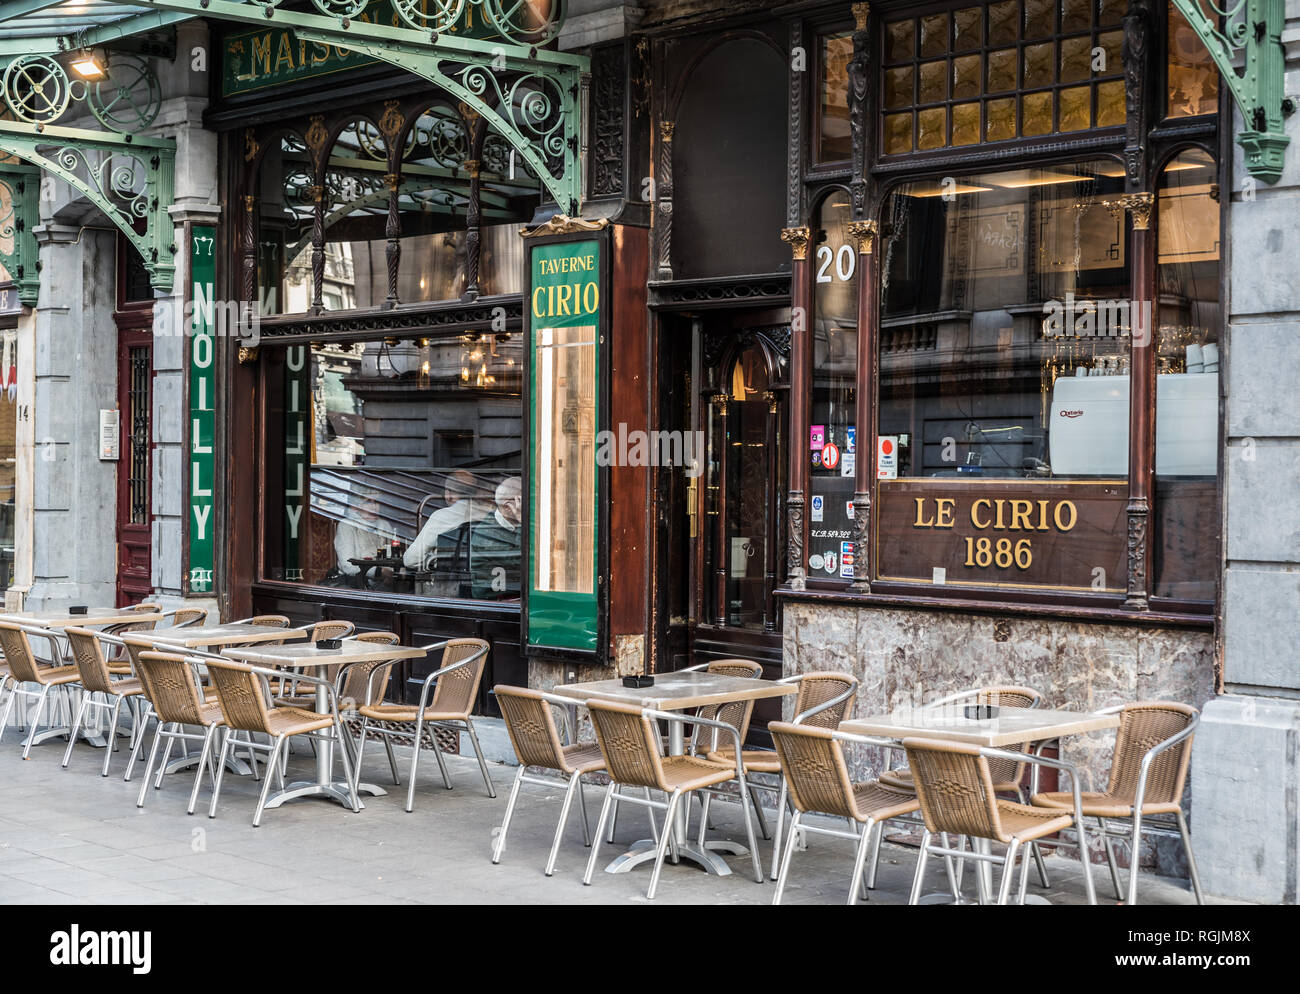 Bruxelles, Belgique - 01 18 2019 : façade décorée et la terrasse du café et restaurant Le Cirio dans un style Art Nouveau Banque D'Images